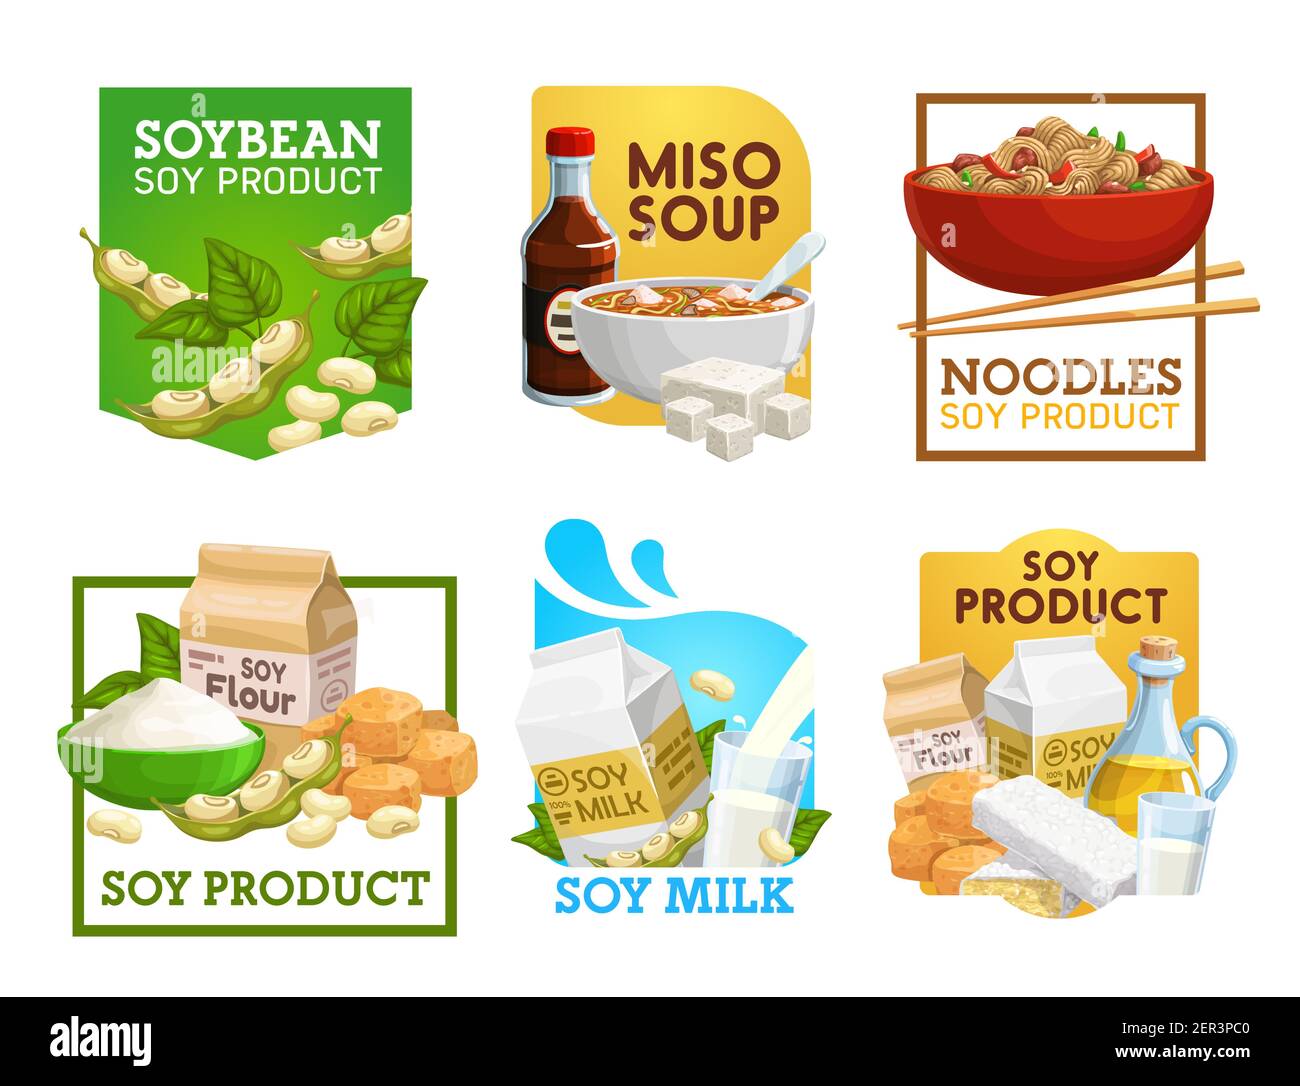 Soja-Lebensmittel und Sojabohnen-Produkte Vektor-Symbole. Misosuppe, Nudeln  und vegetarisches Mehl, Milch, Tempeh und Öl mit Sojasoße. Vegane  Ernährung, Tofu, Soja Stock-Vektorgrafik - Alamy